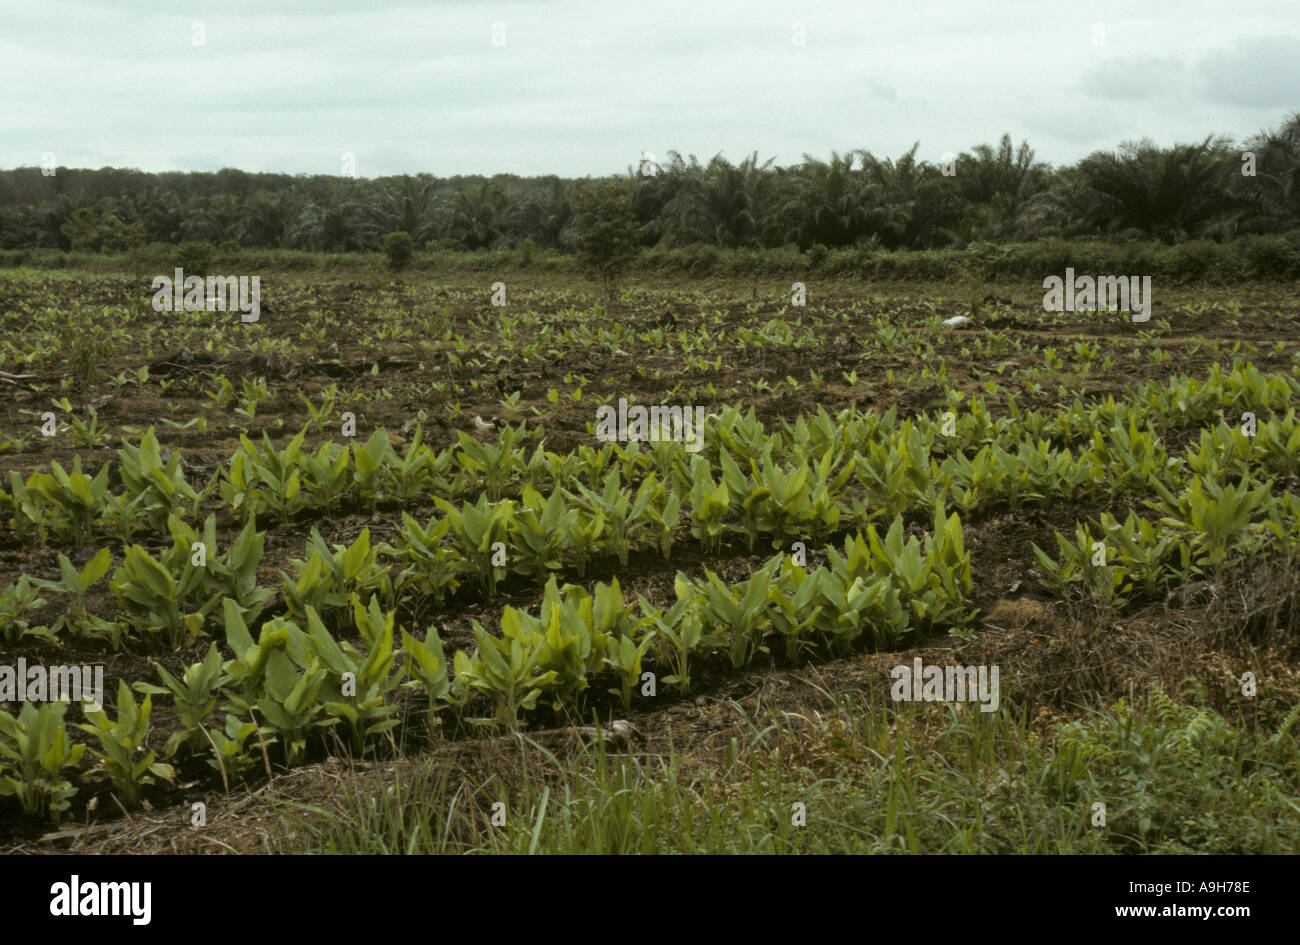 Landwirtschaftliche Kulturpflanzen Malaysia vor kurzem gepflanzt Banane Plantage Johor Zustand Stockfoto